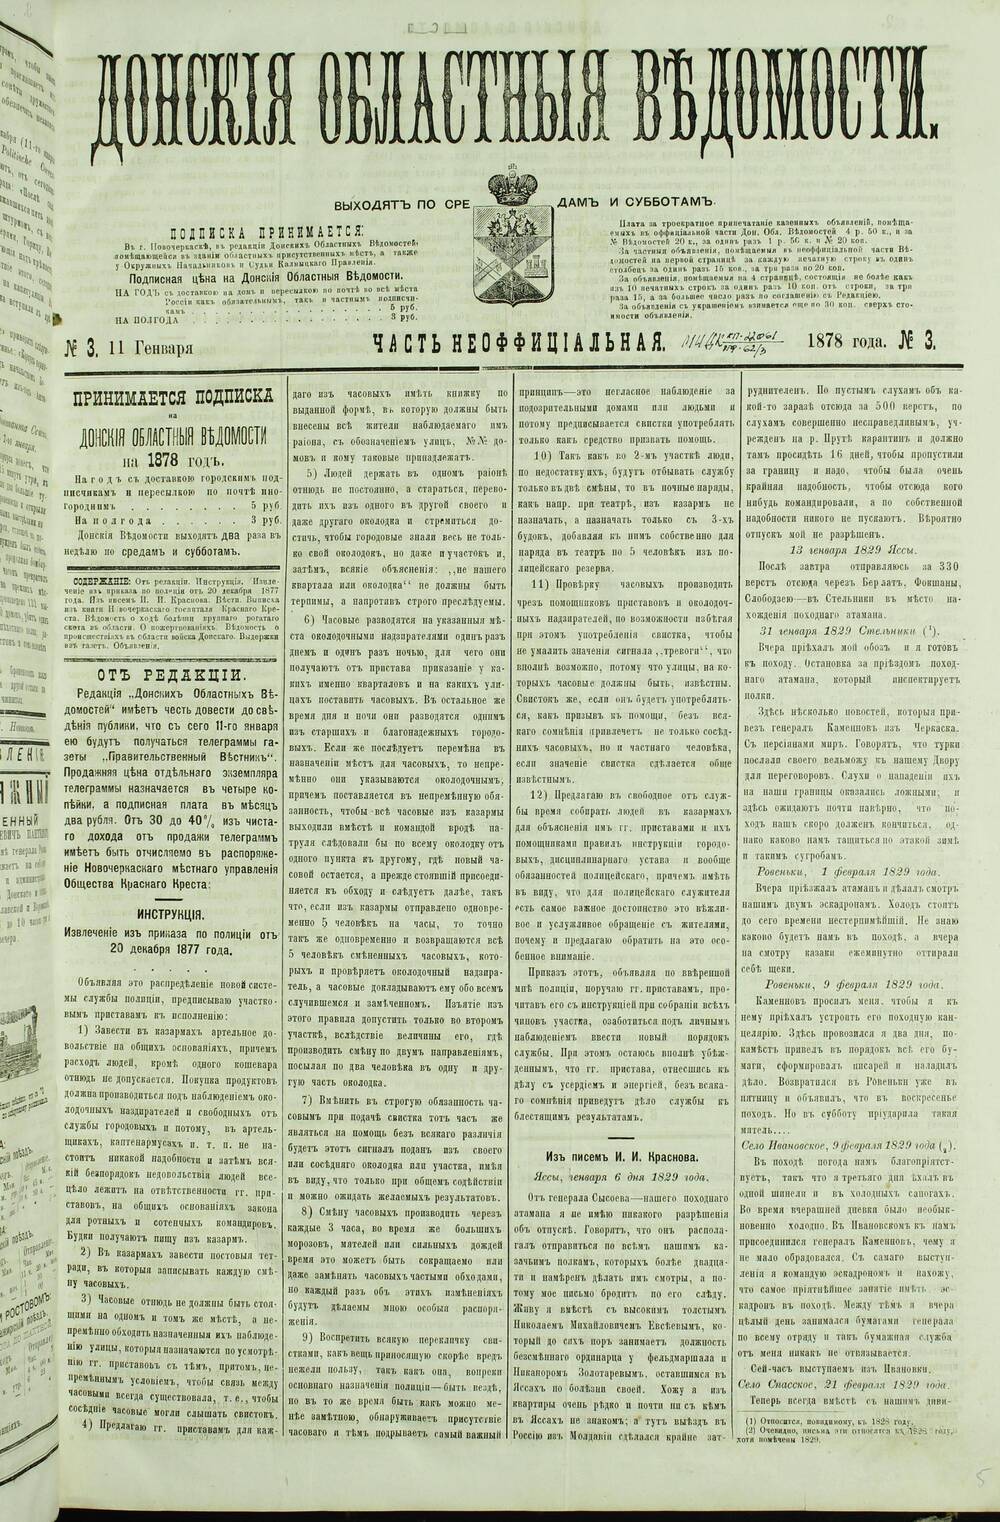 Газета «Донские Областные Ведомости» Часть Неофициальная №3. 1878 г.